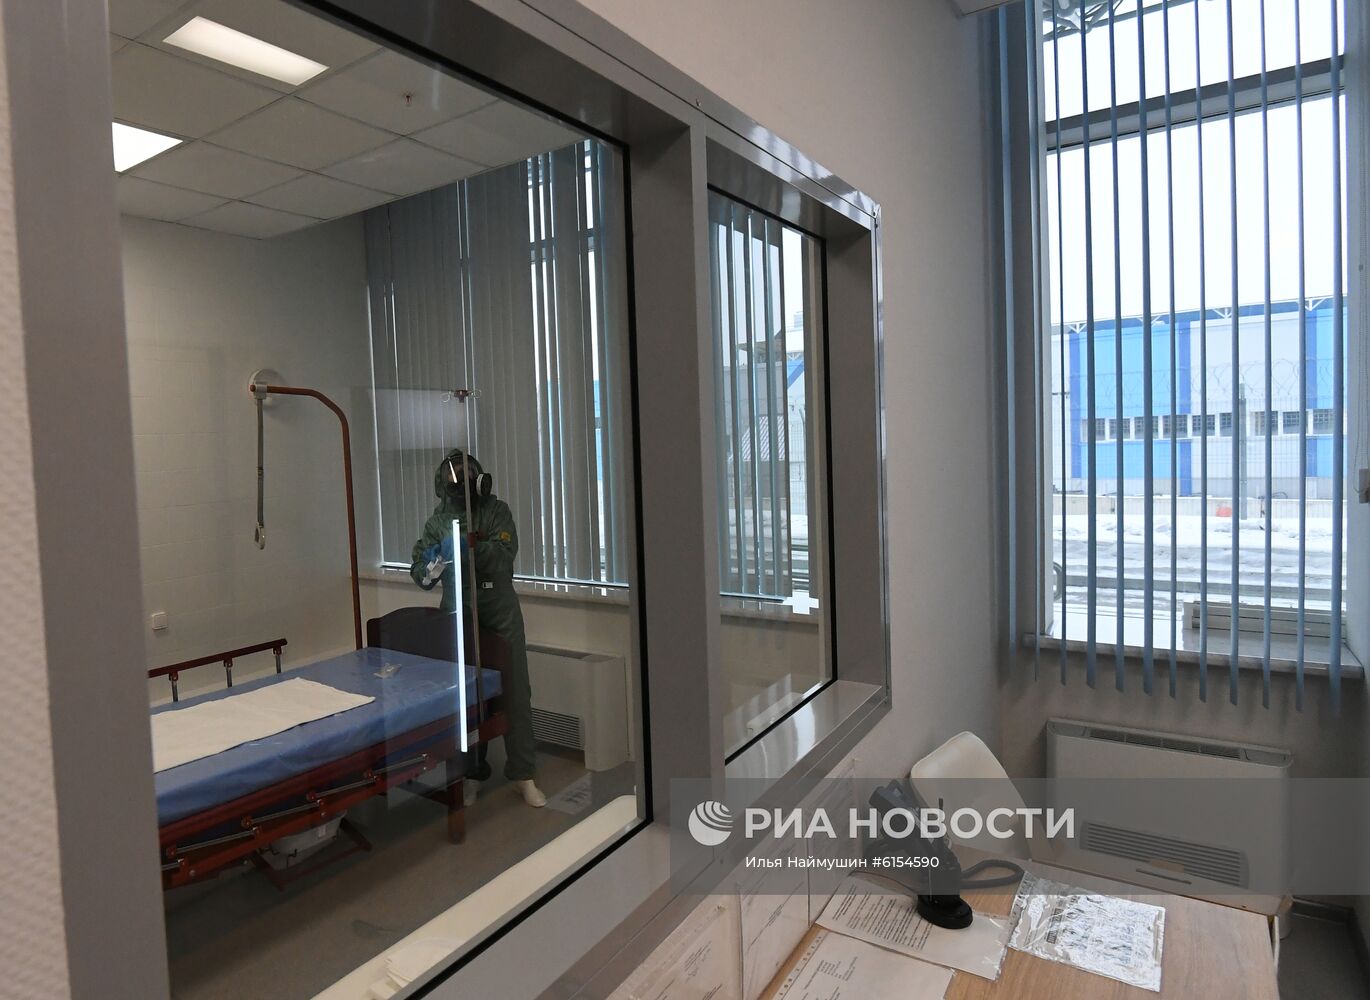 Санитарно-контрольный пункт в аэропорту Красноярска